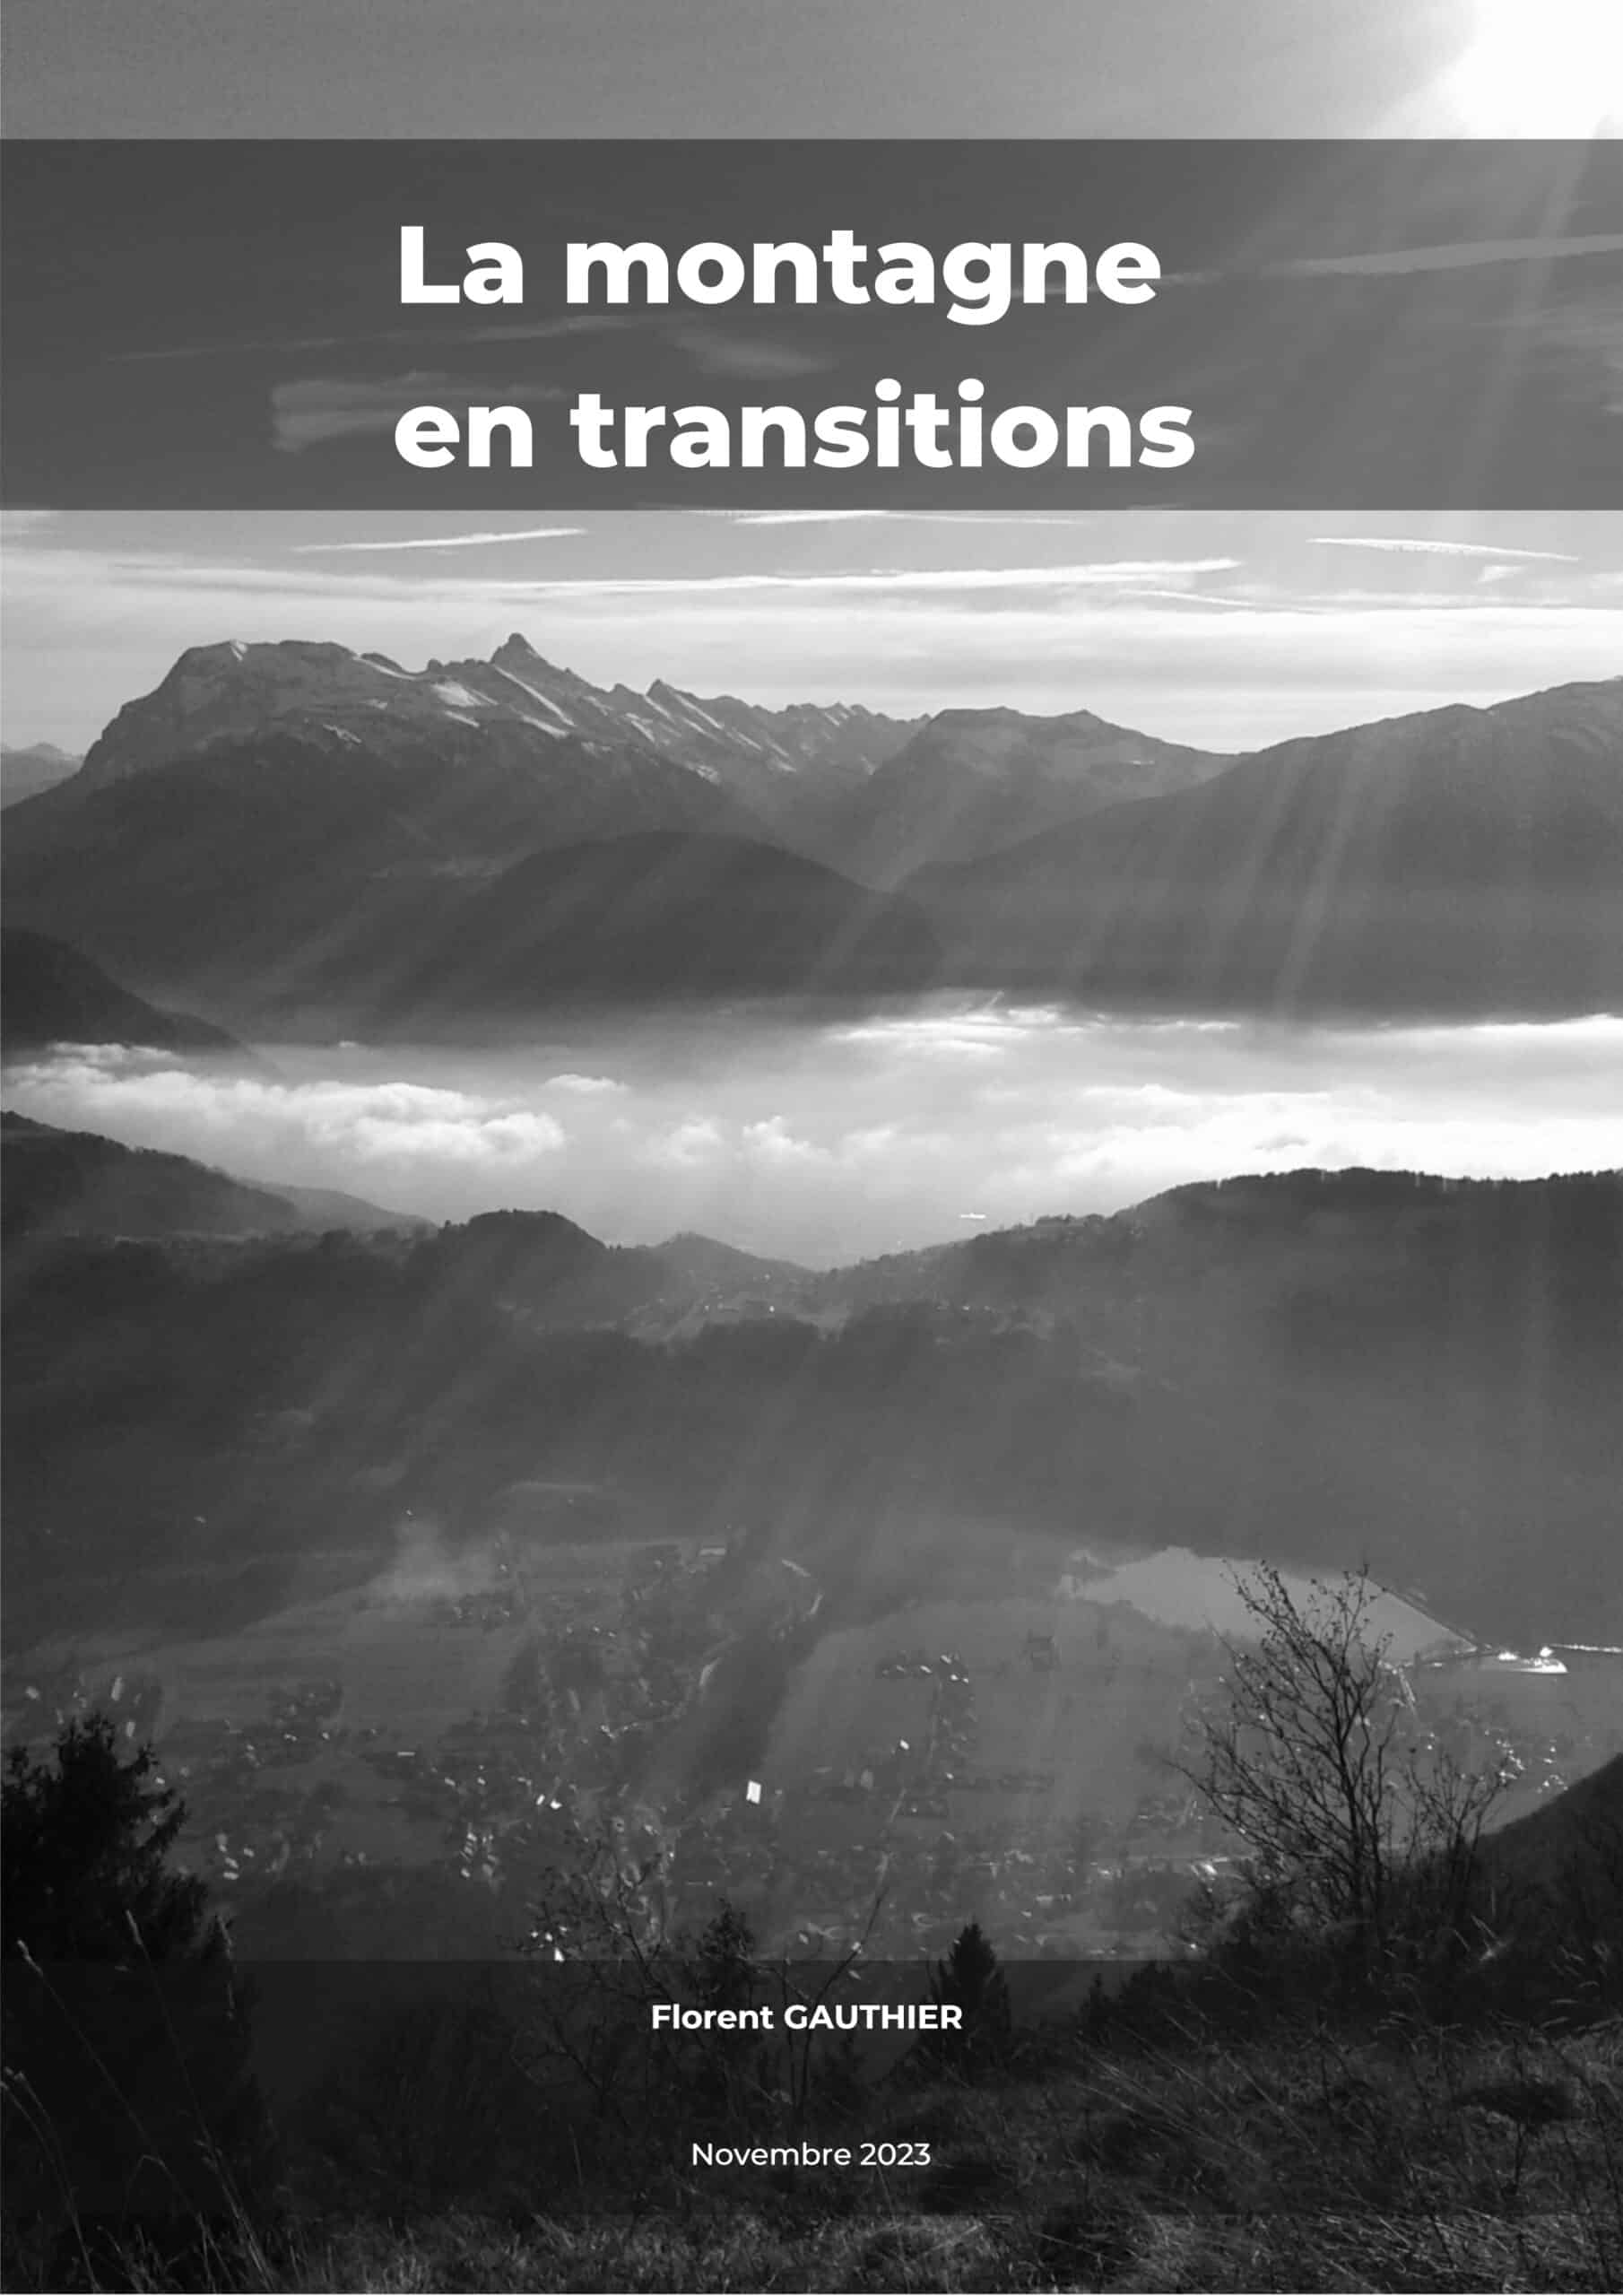 rebiol étude la montagne en transition architecte 74 haute savoie (1)